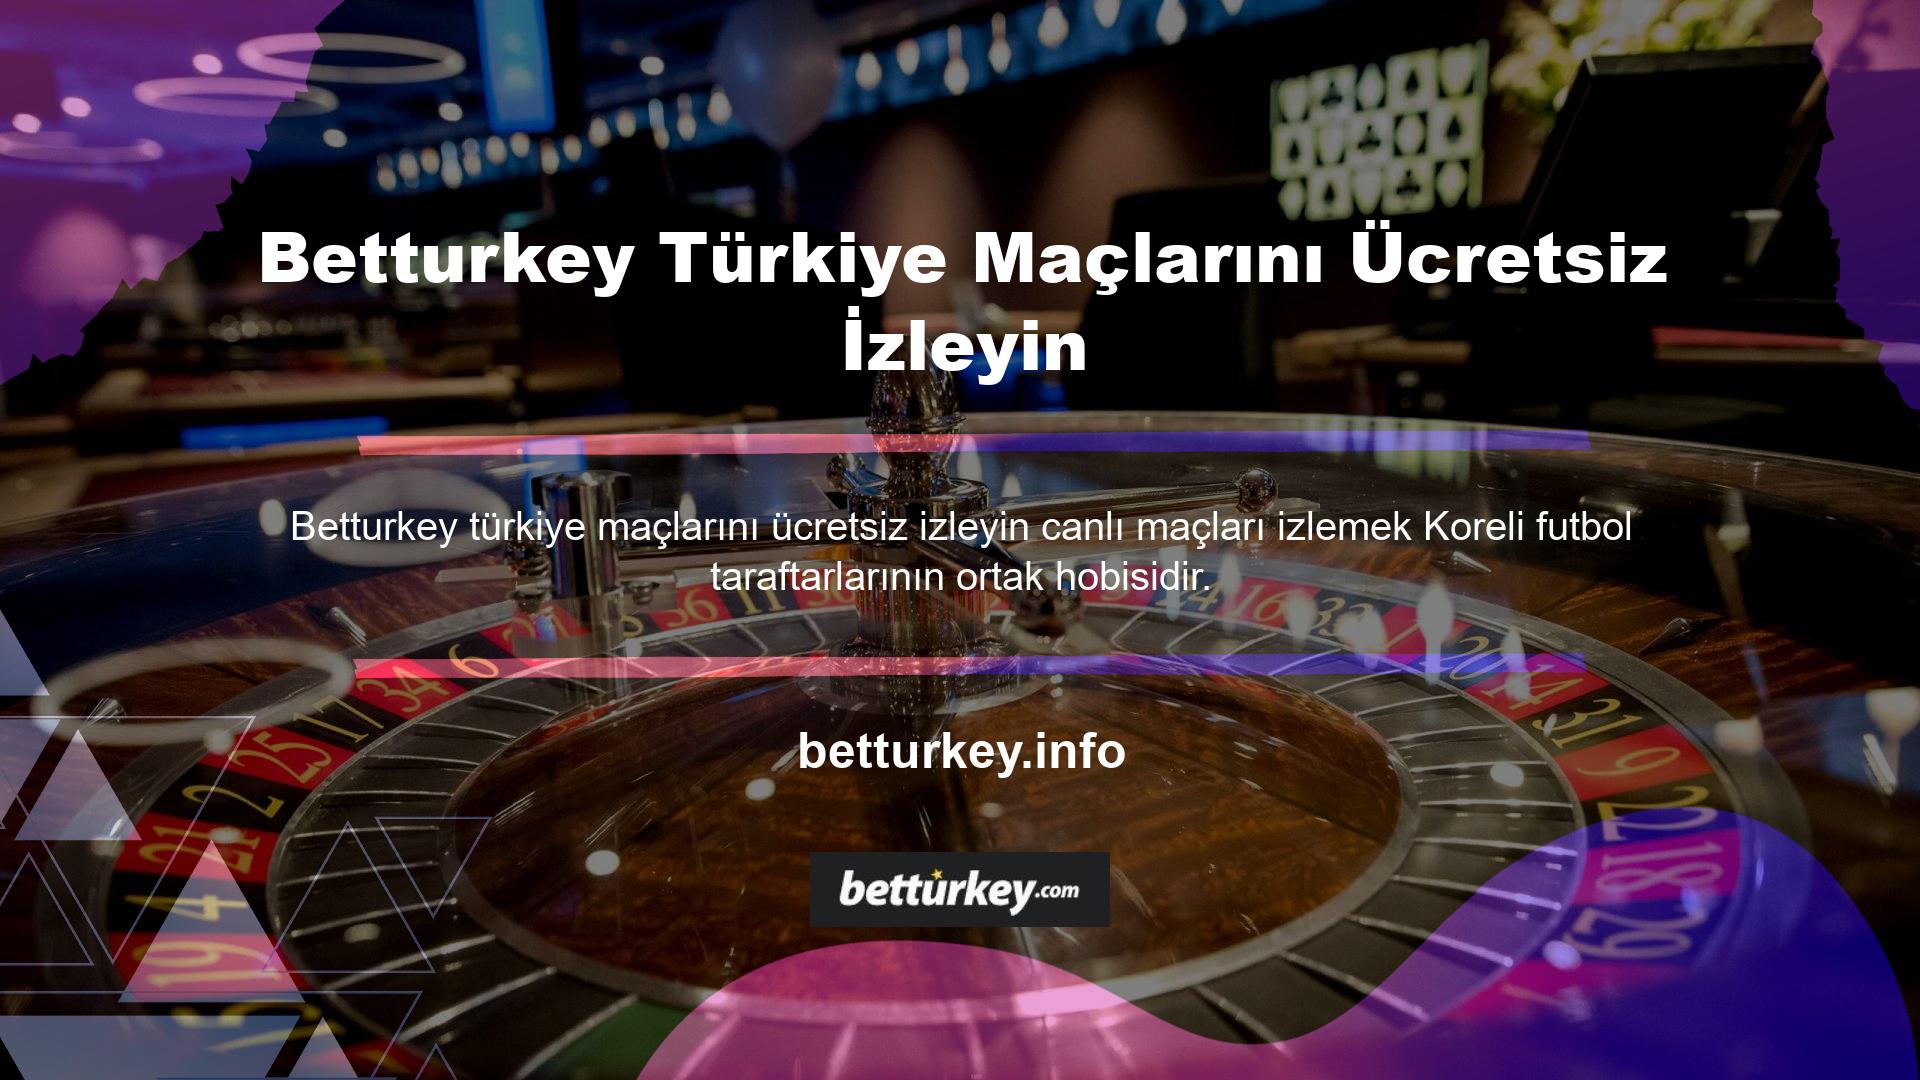 Betturkey, bu yayınları TV ekranlarından izleyemeyen futbolseverler için ücretsiz canlı yayın ve Türkiye maçlarının maç yayınlarını sunmaktadır